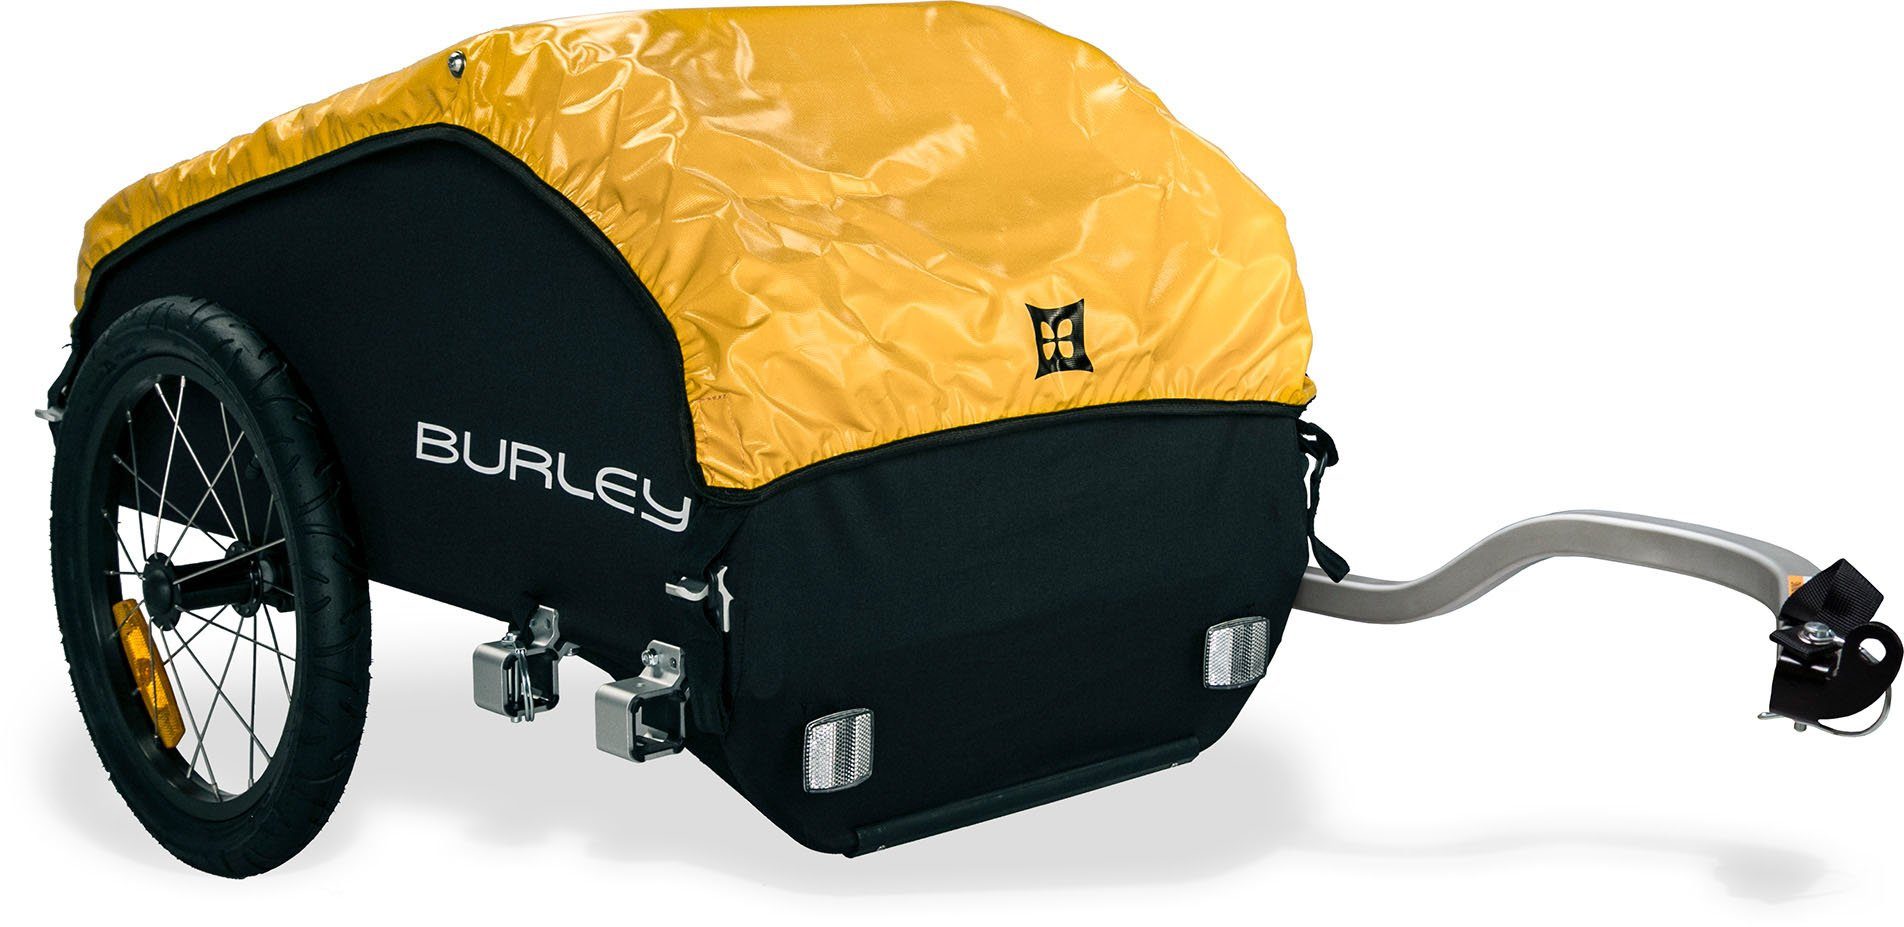 Burley Fahrradlastenanhänger Nomad, Kompakt online kaufen | OTTO